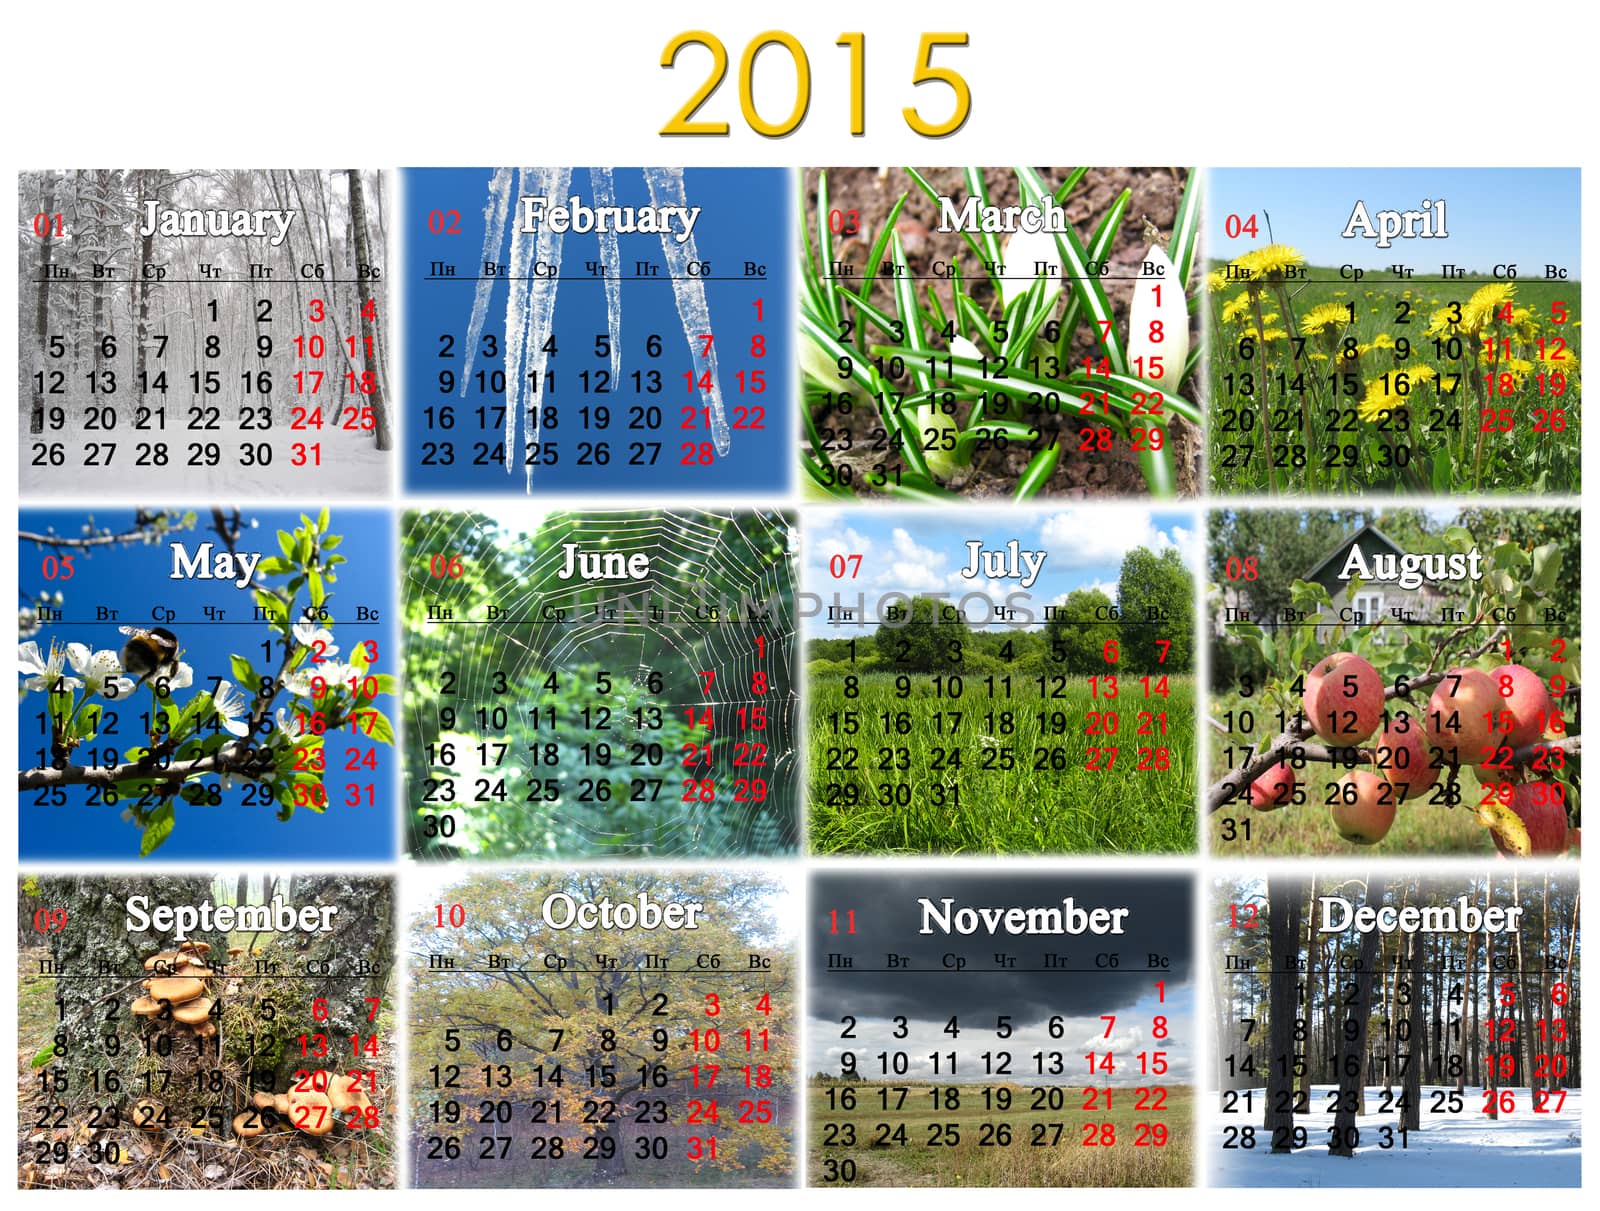 calendar for 2015 year by alexmak